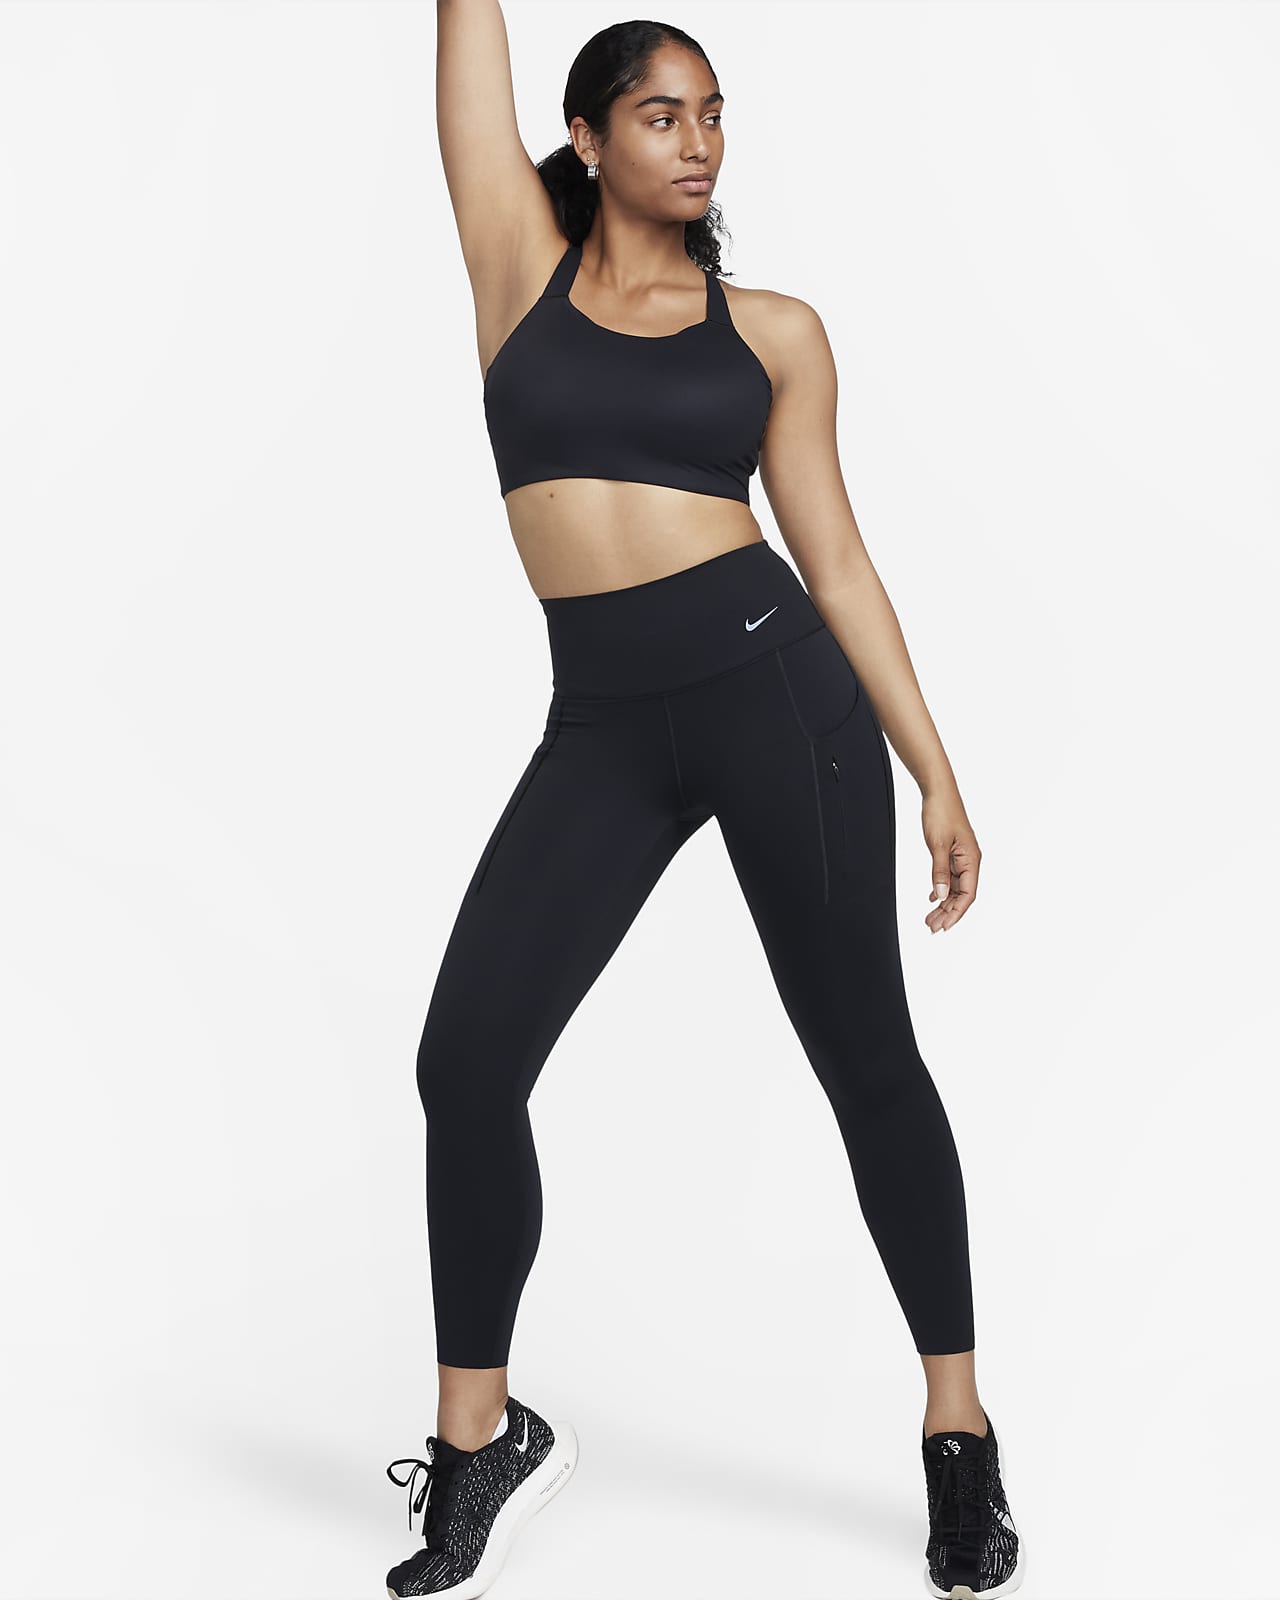 Nike Go-leggings i 7/8-længde med høj talje, Therma-FIT og lommer til kvinder